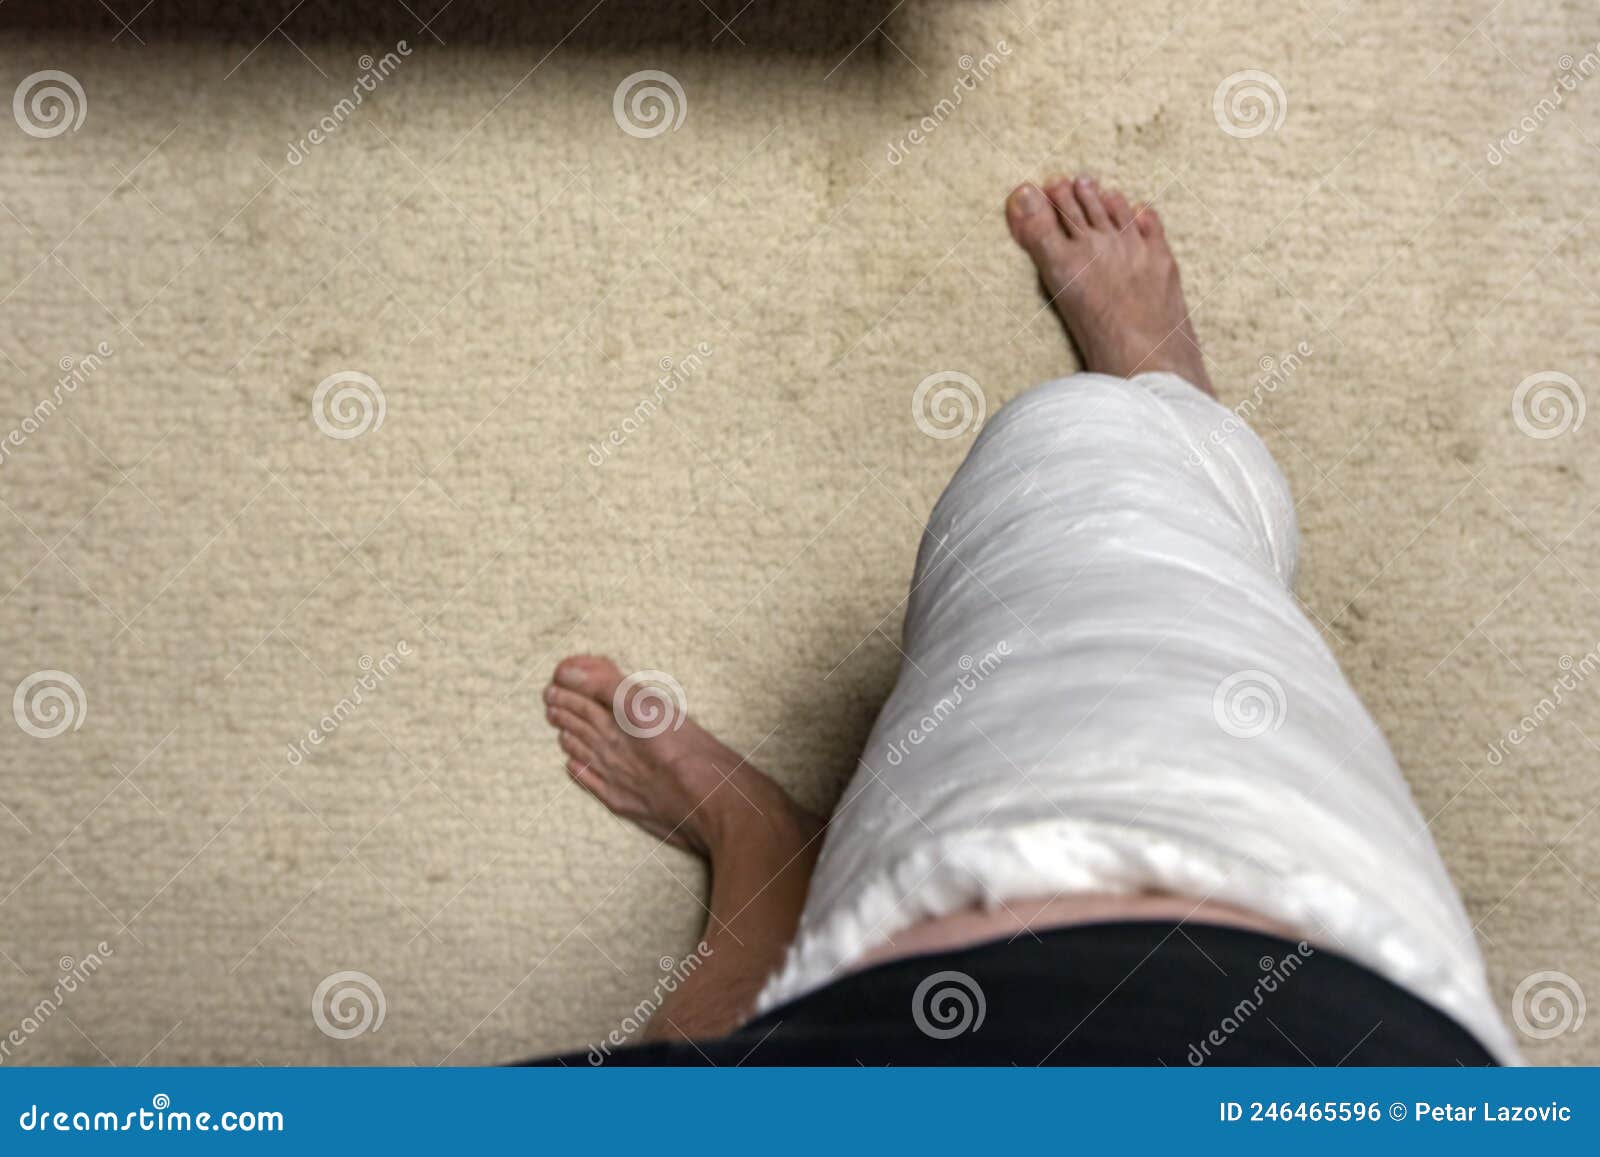 断腿男子在家中康复 库存图片. 图片 包括有 解决, 破裂, 可及性, 弯曲, 长沙发, 有残障, 房子 - 218880789